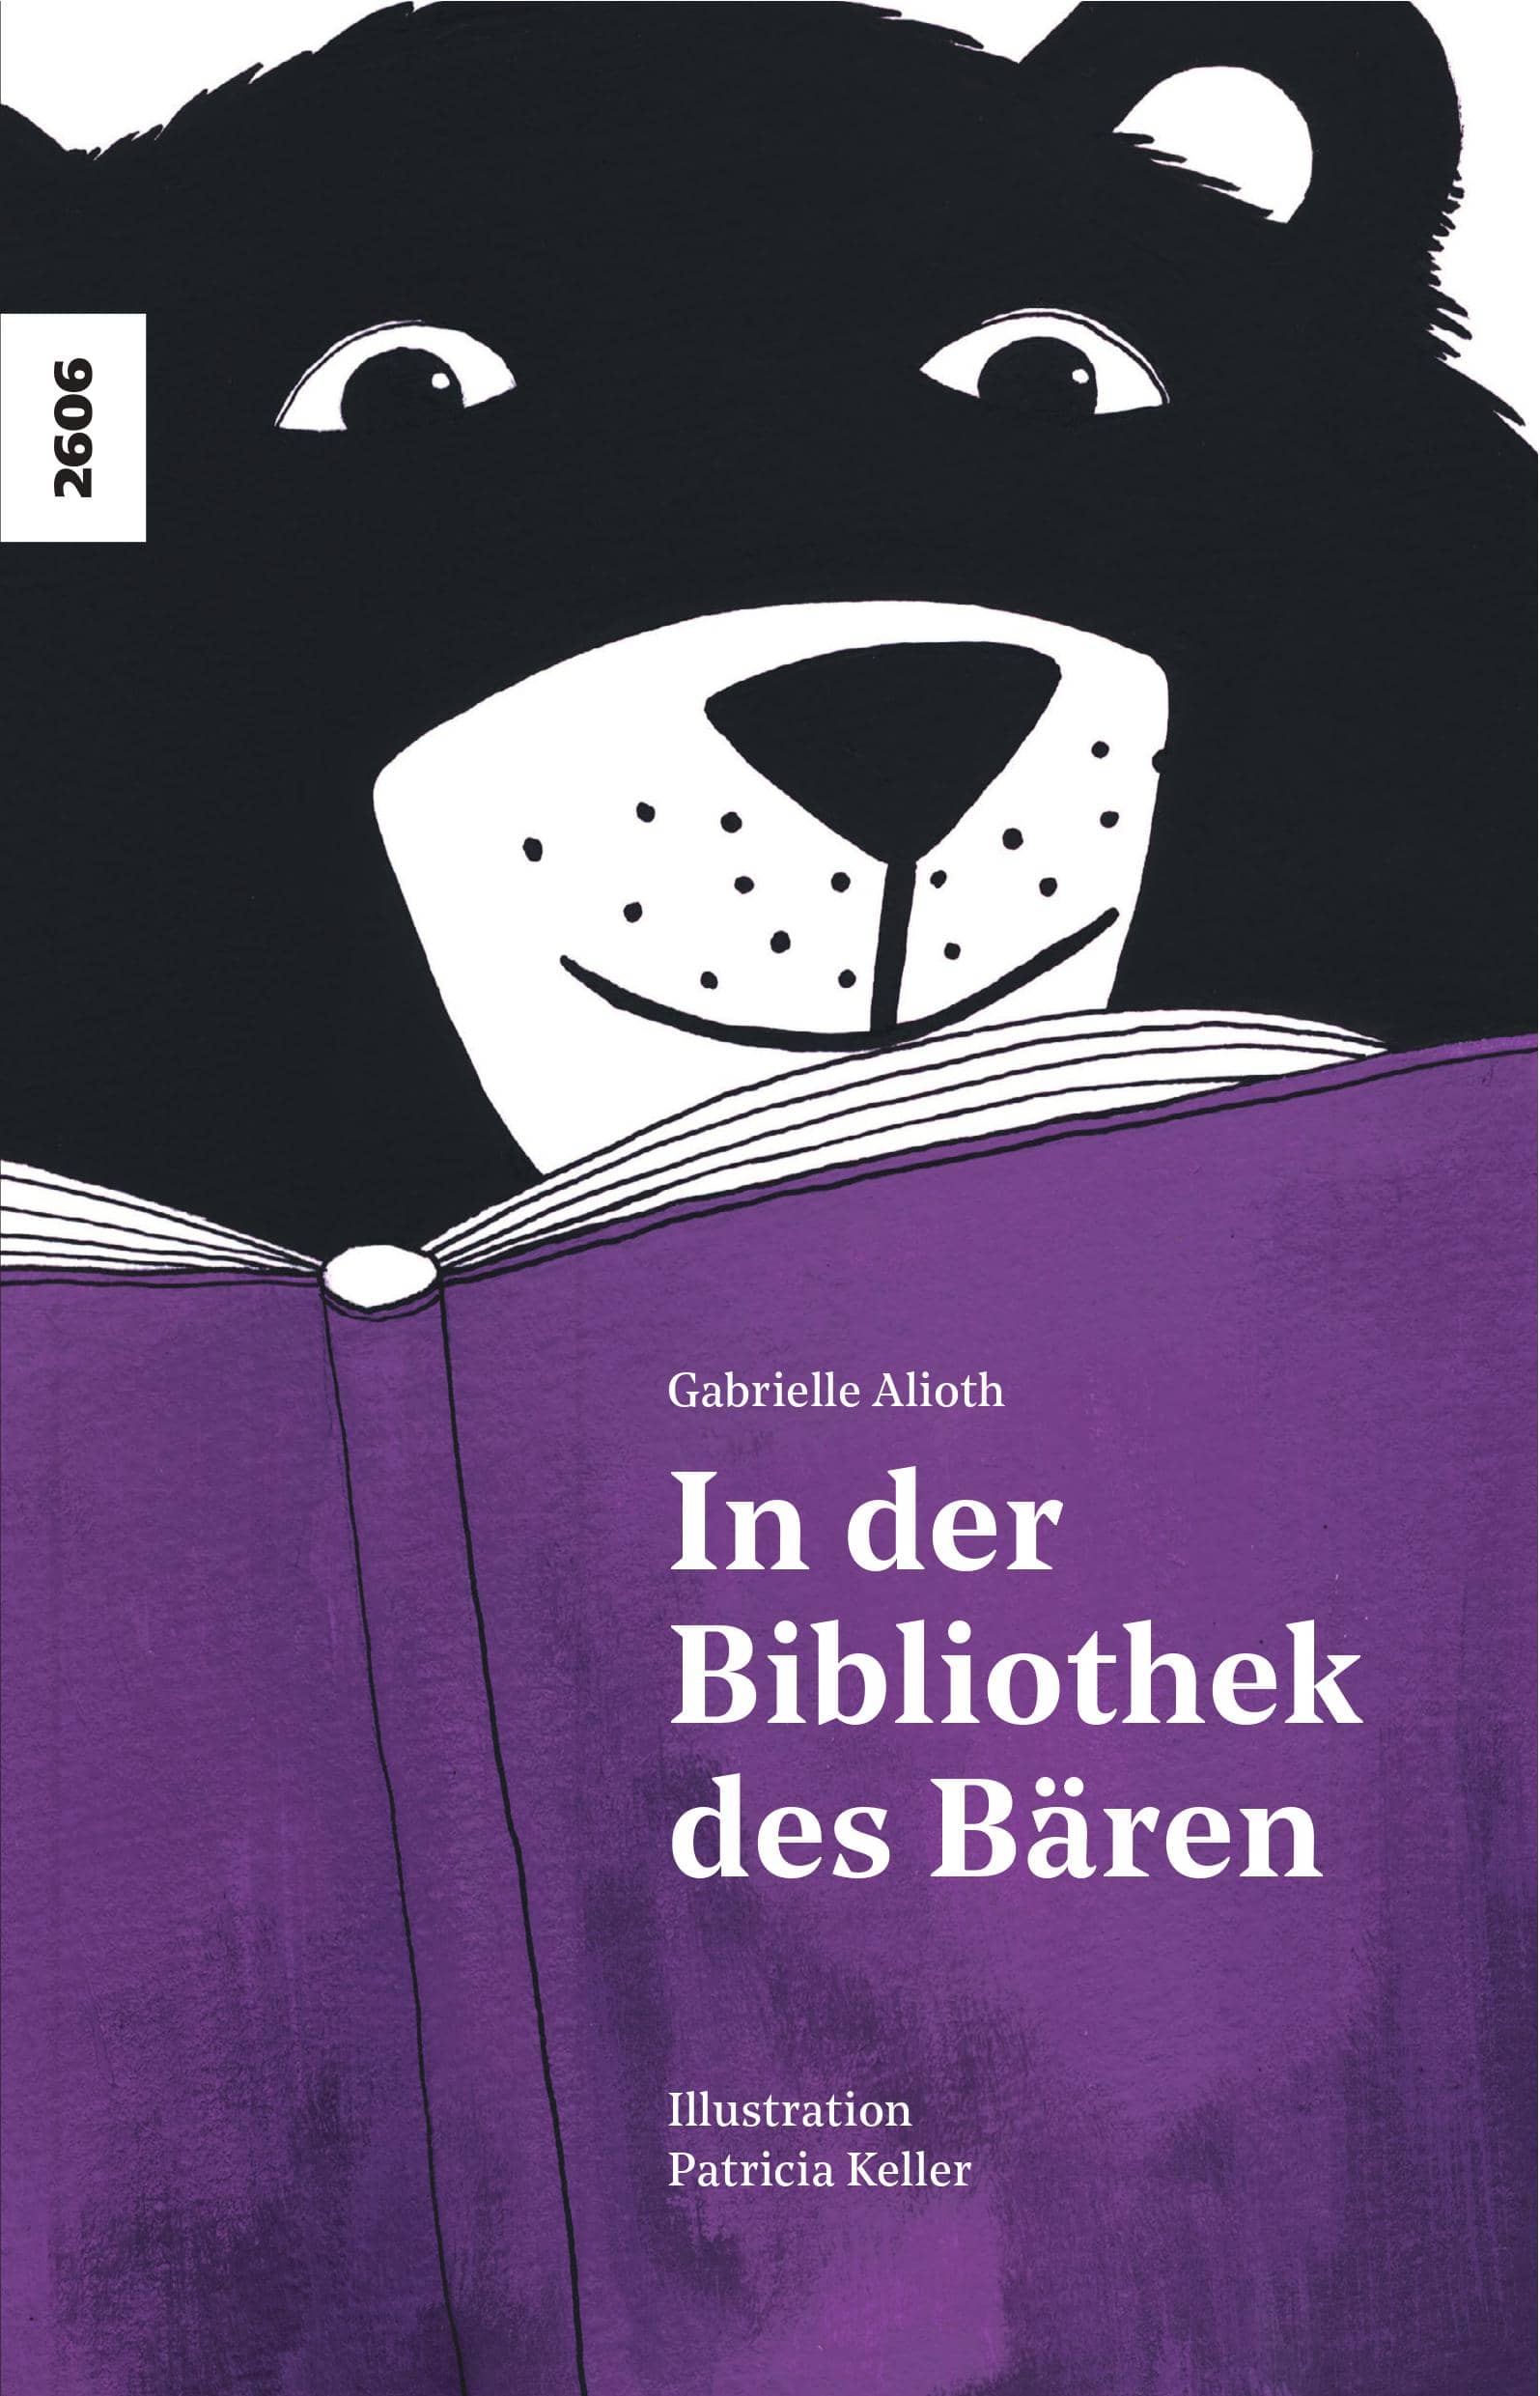 In der Bibliothek des Baeren, ein Buch von Gabrielle Alioth, Illustration von Patricia Keller, SJW Verlag, St. Gallen, Geschichte